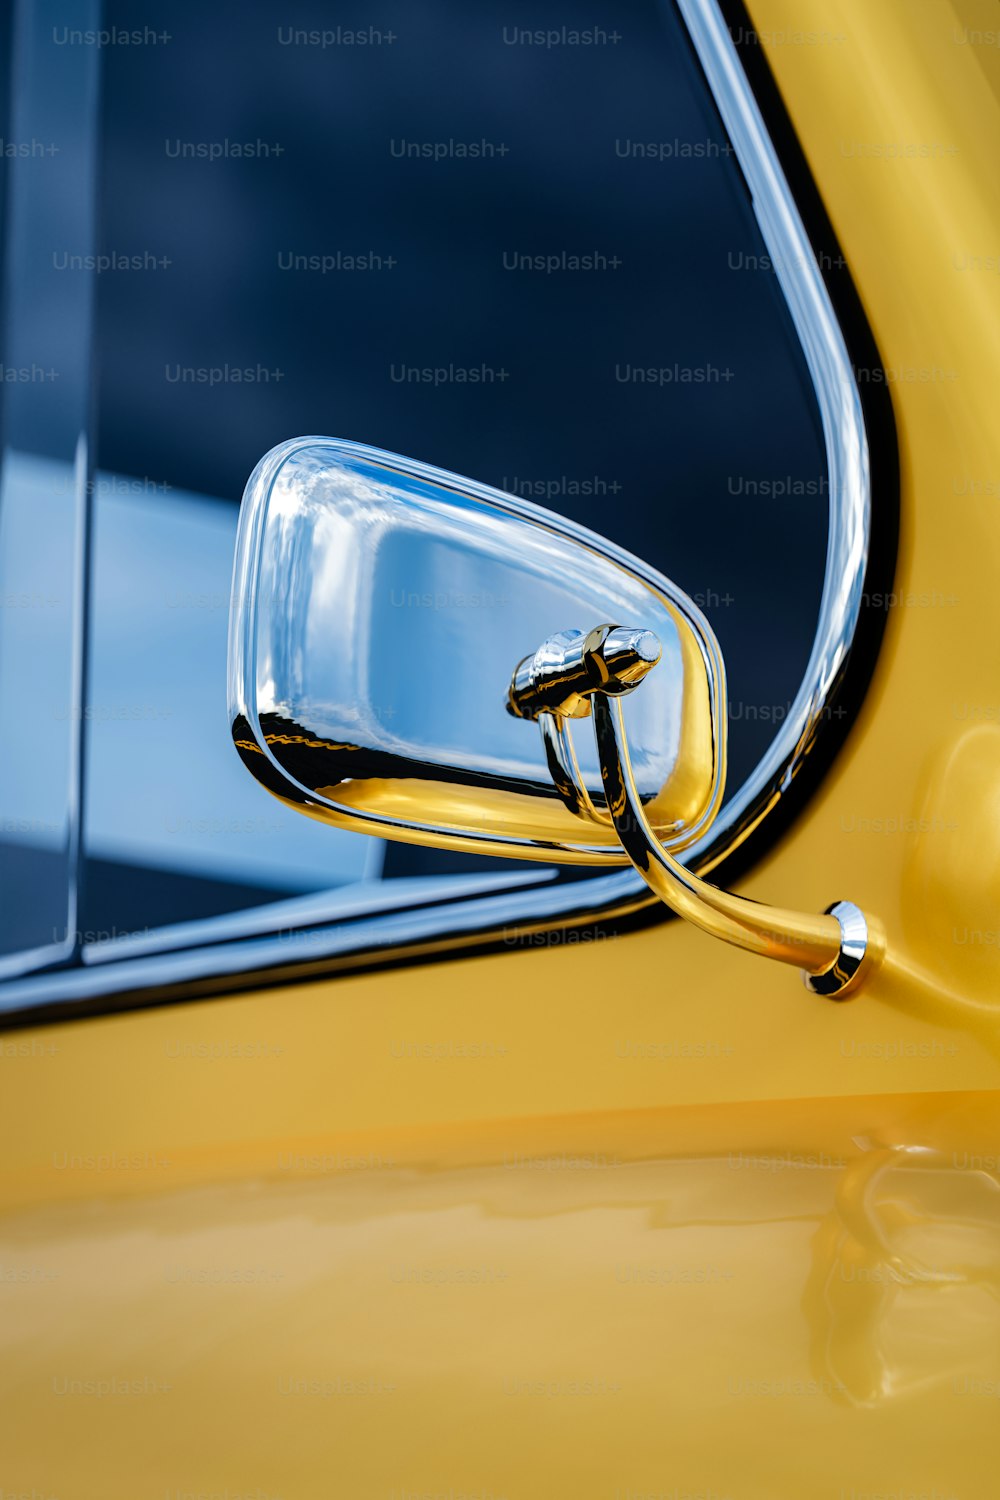 Un primer plano del espejo lateral de un coche amarillo